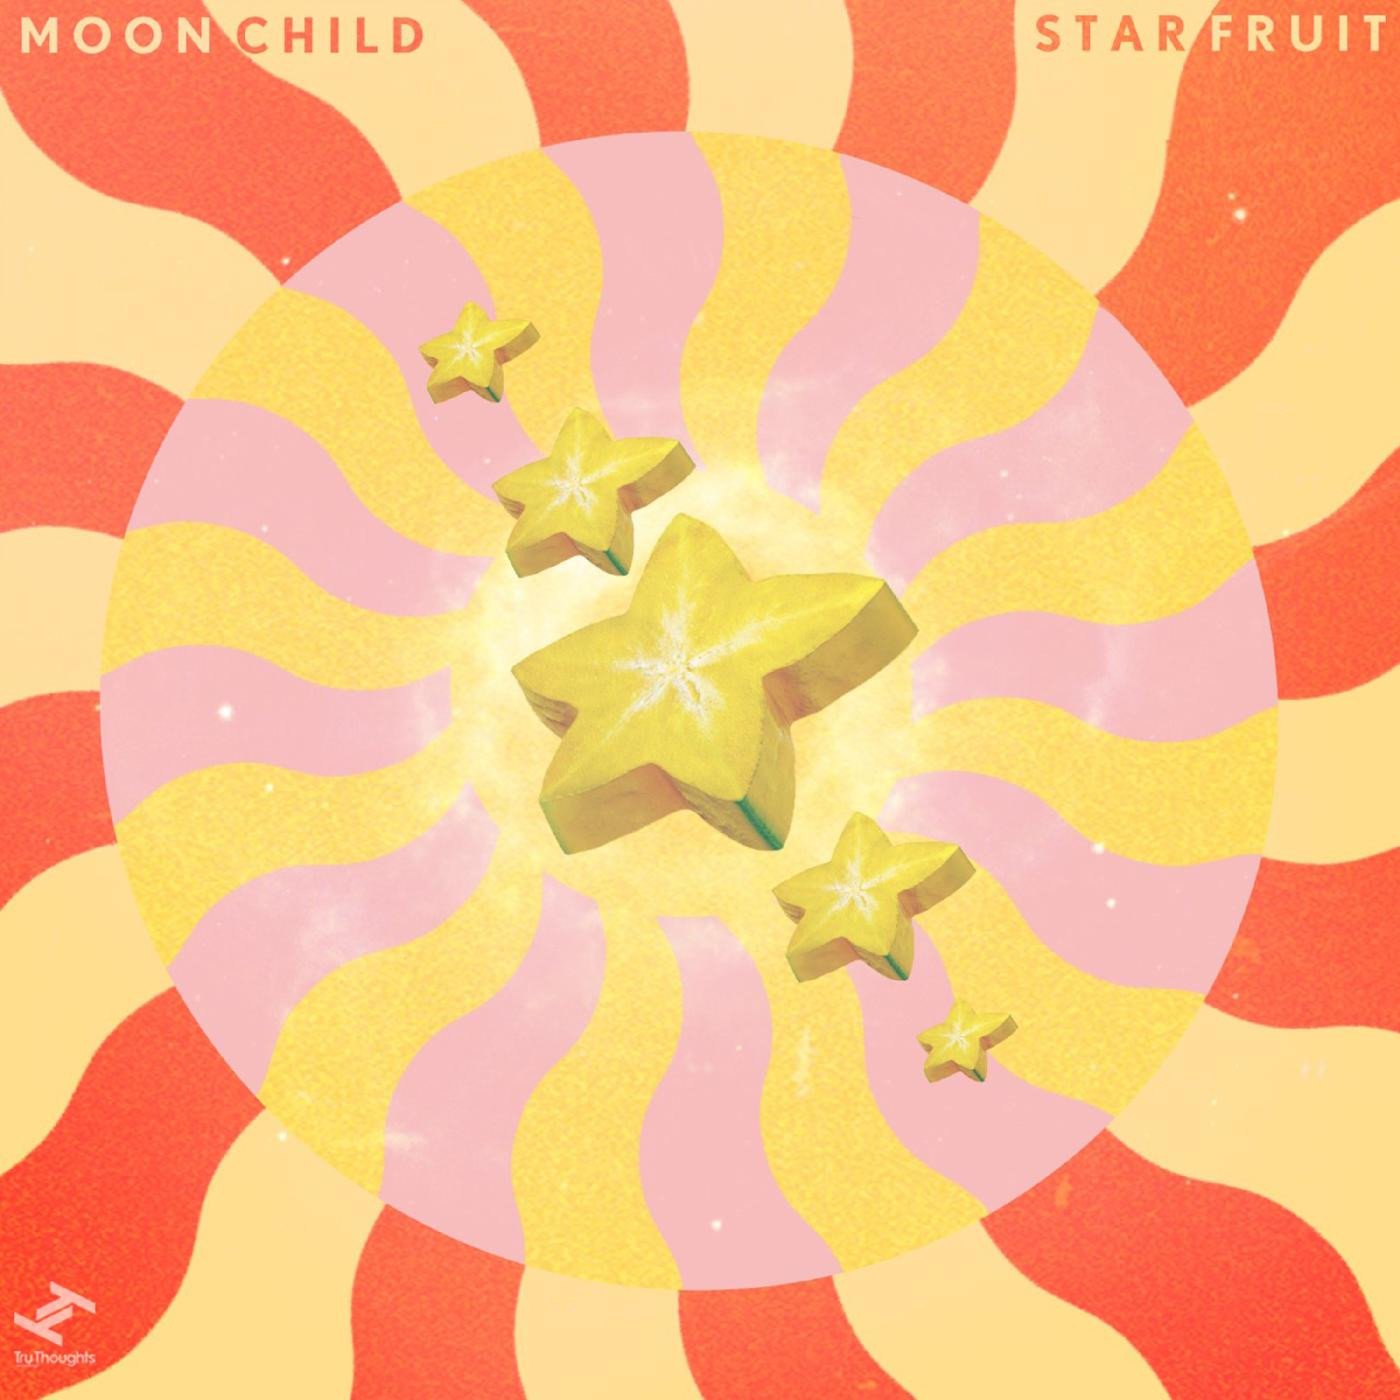 Starfruit (Pre-order due 11 Feb)